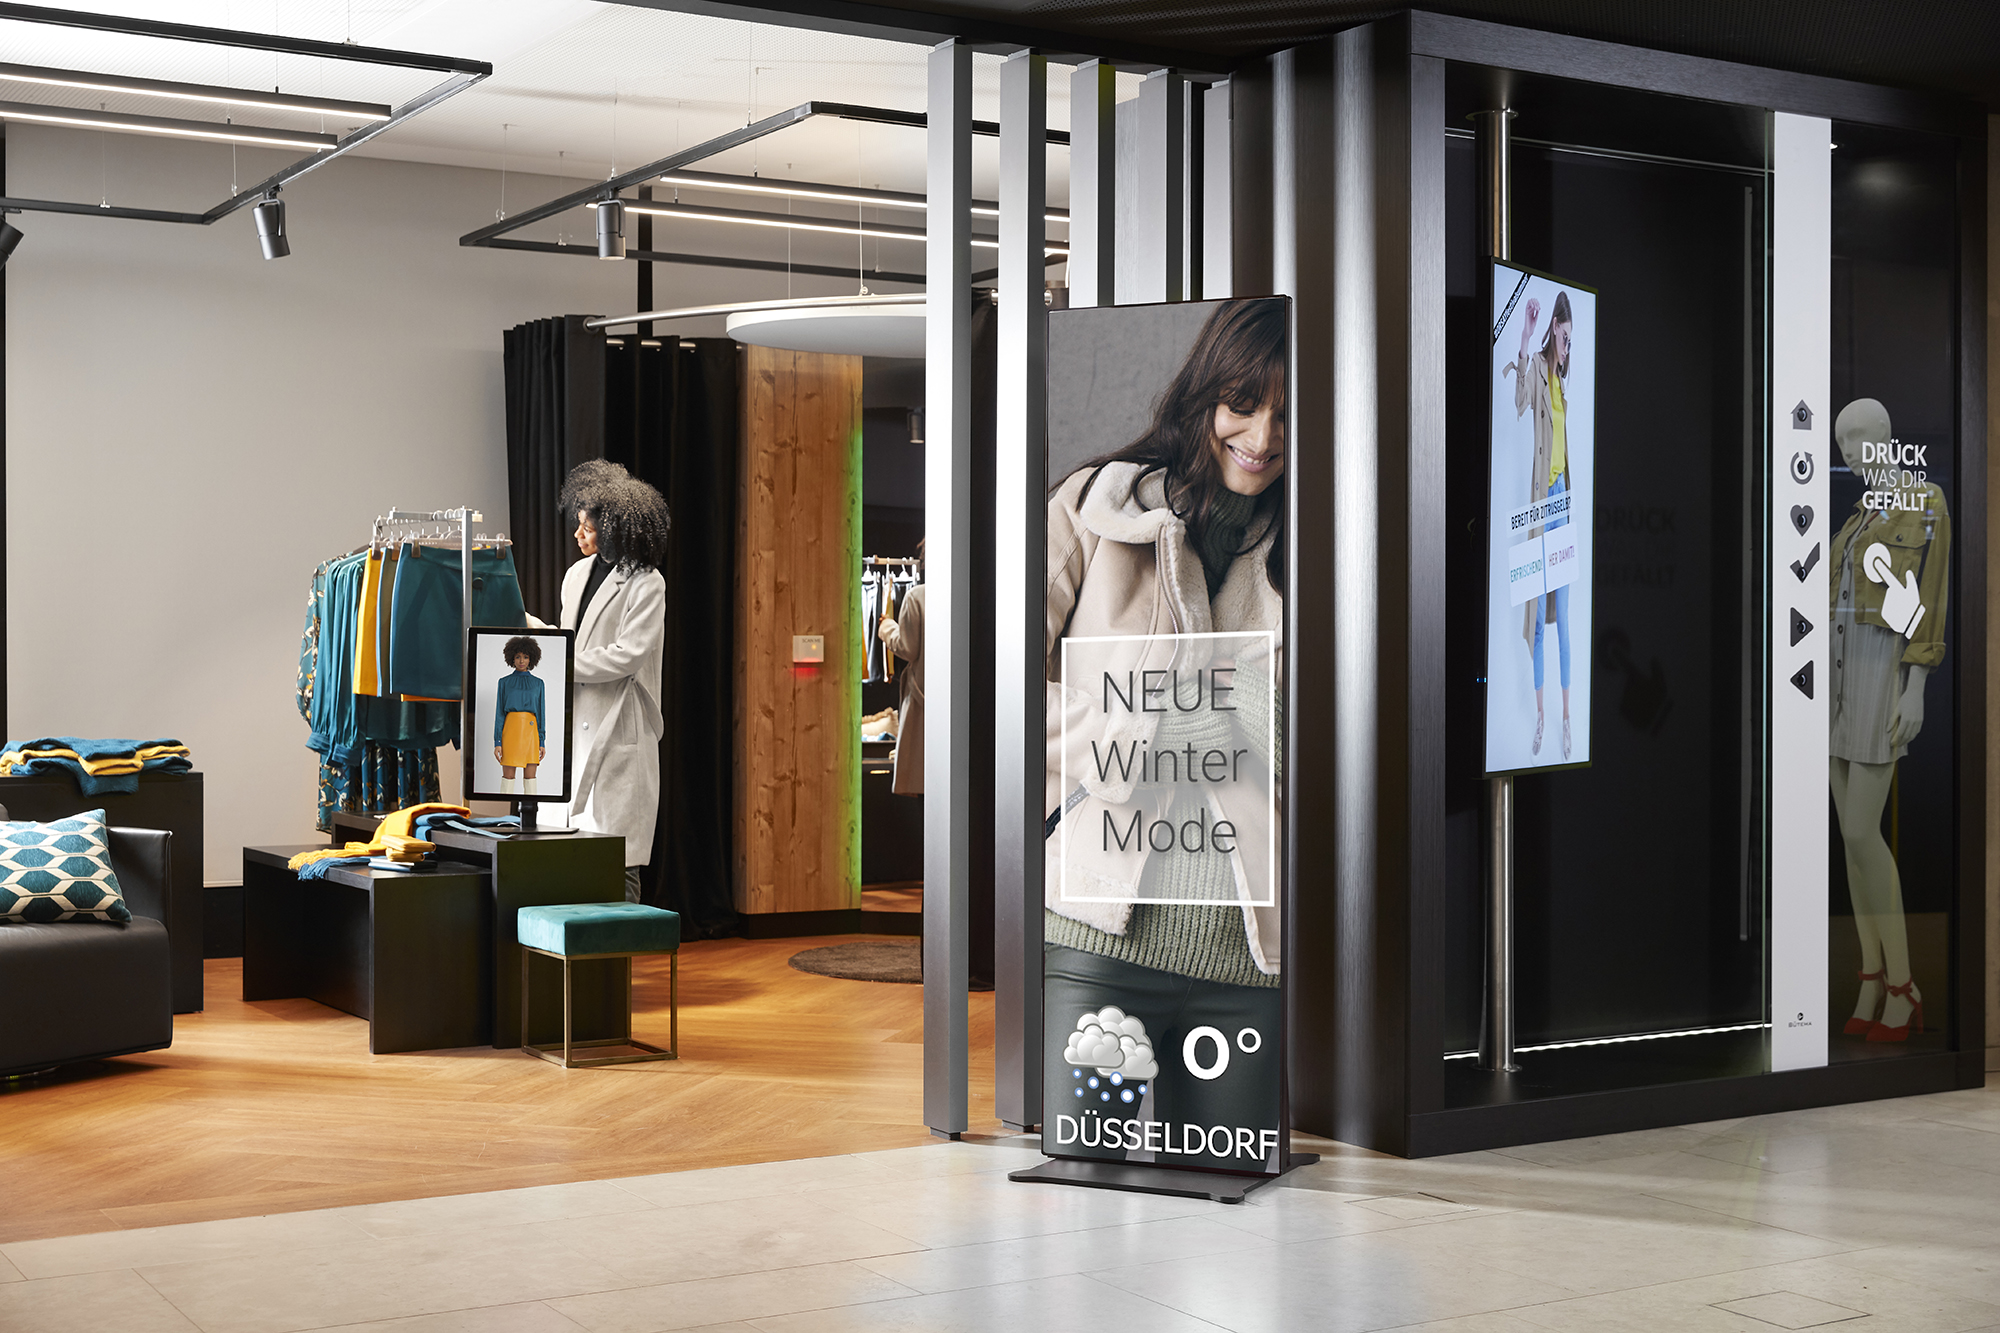 LED Poster im Portrait-Format vor Store-Eingang mit wetterabhängigen Digitial Signage Ausspielung